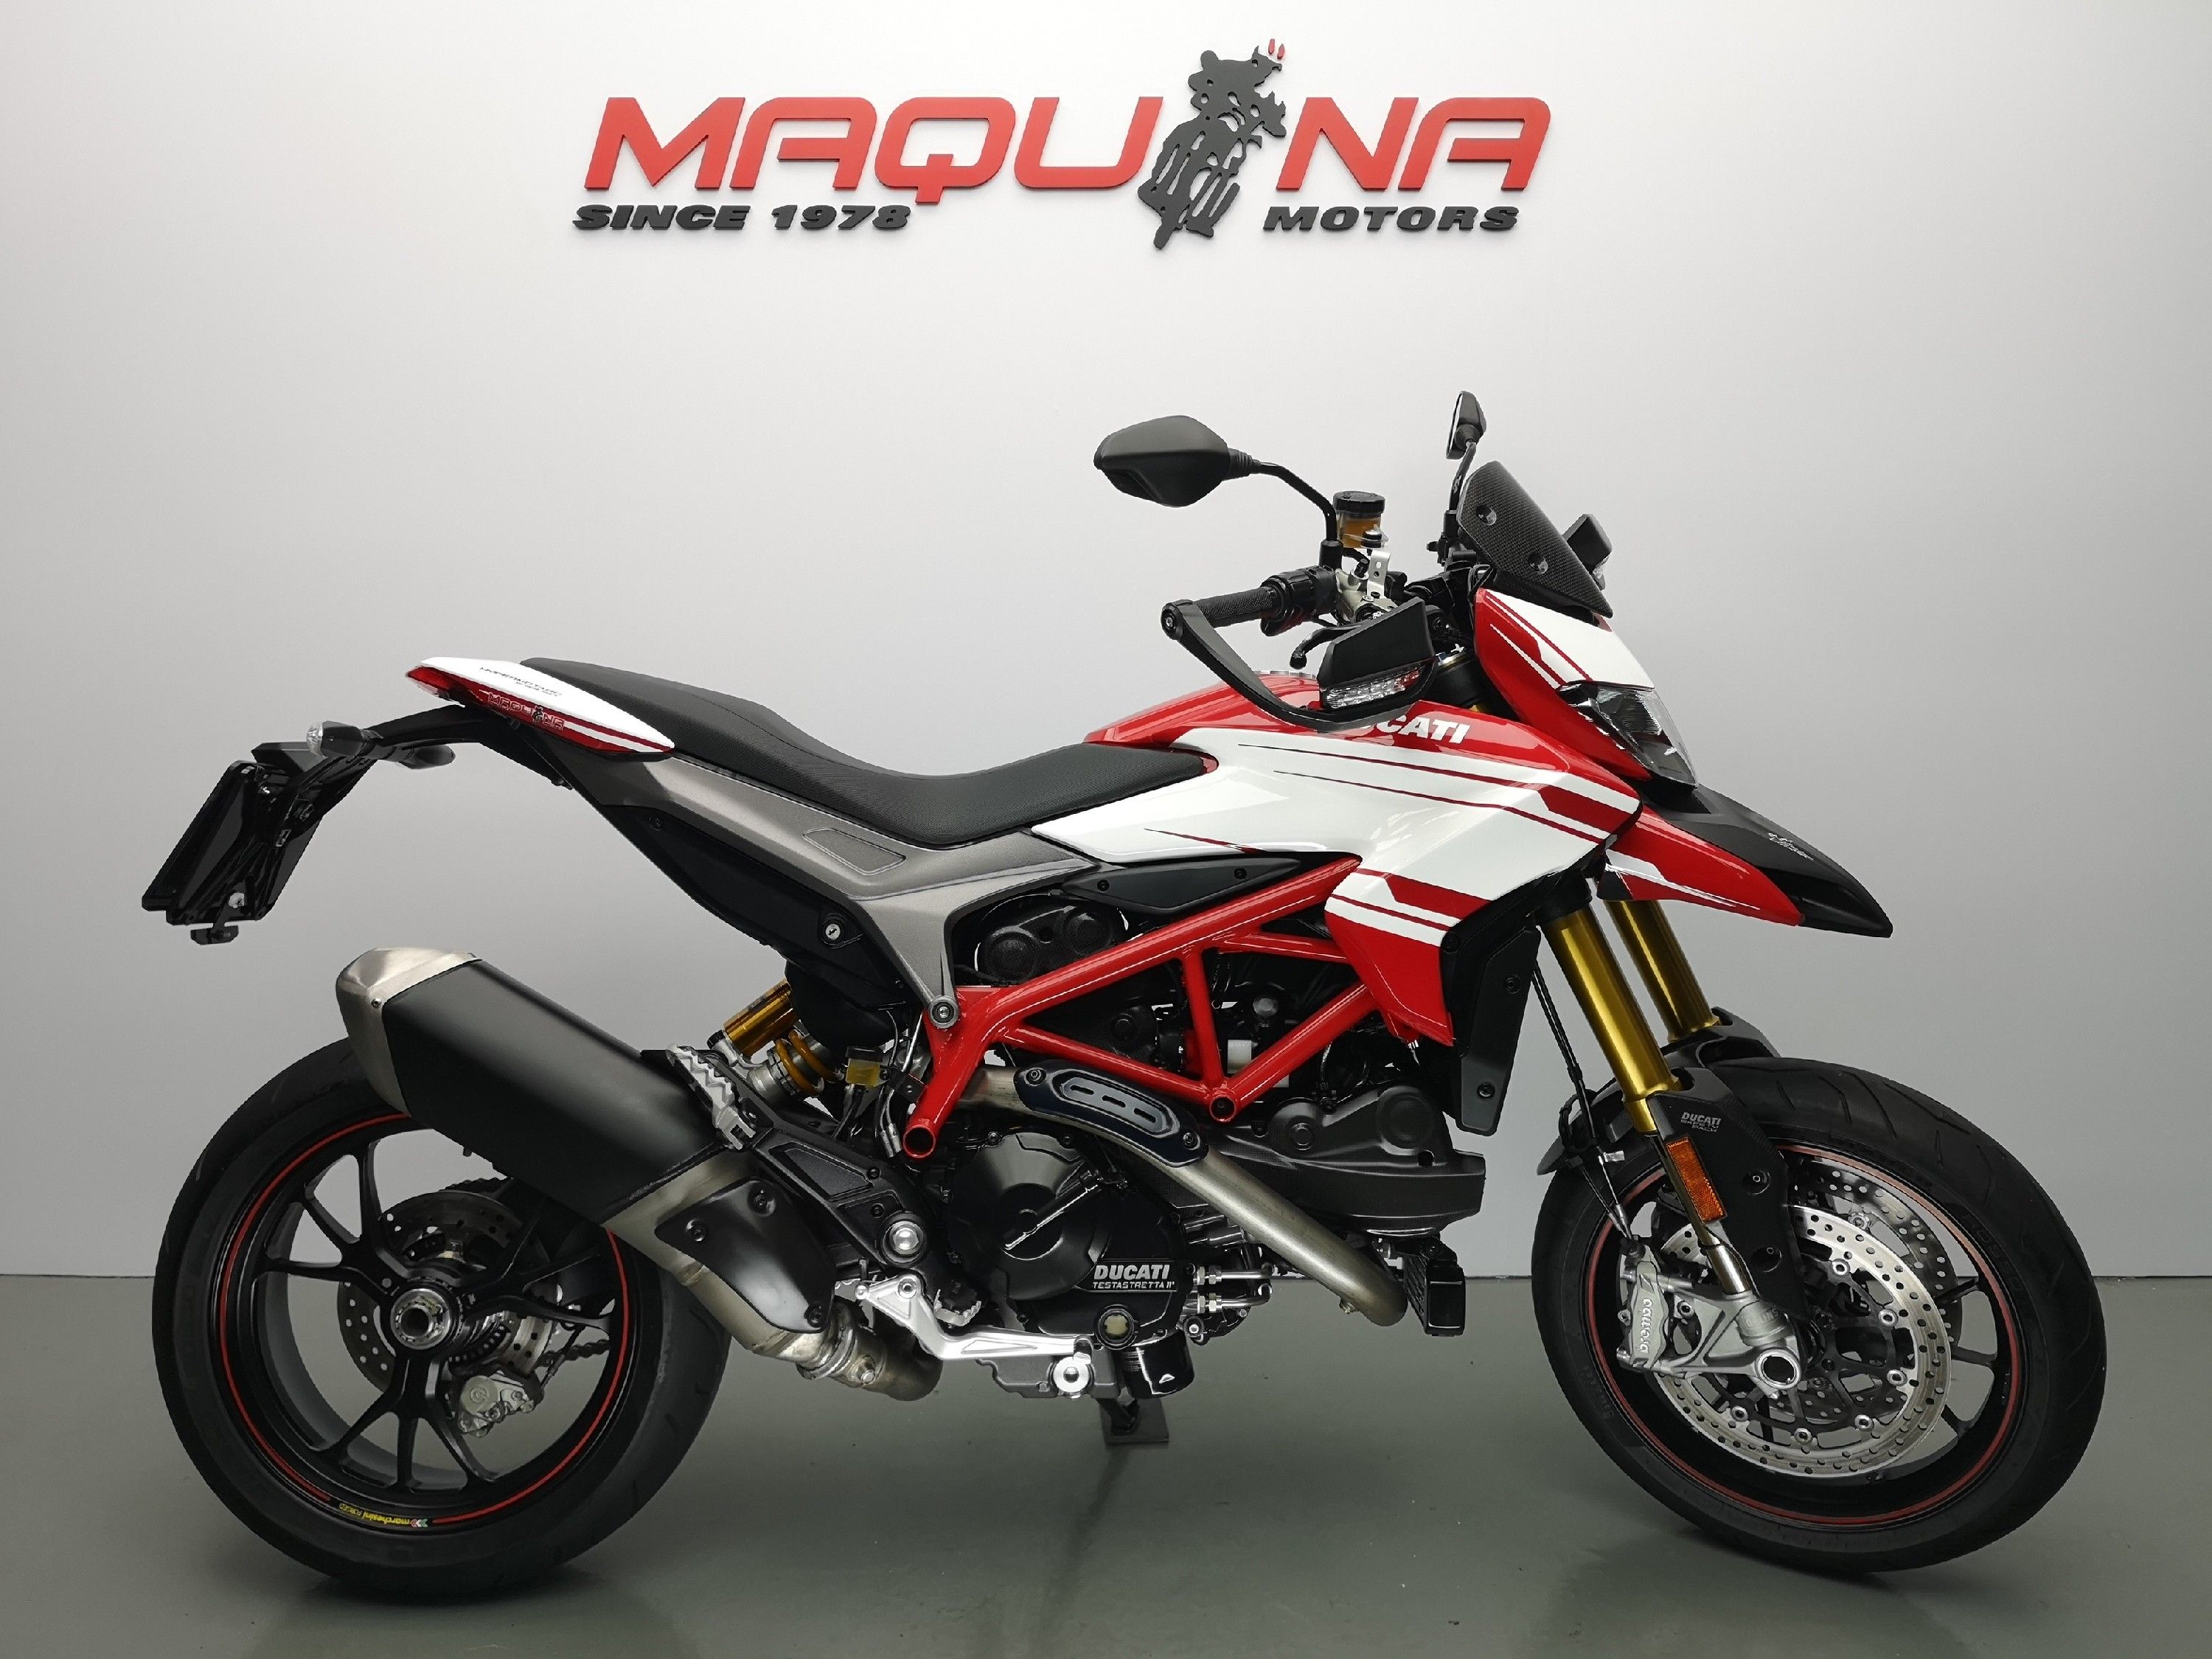 HYPERMOTARD 939 – Maquina Motors motos ocasión